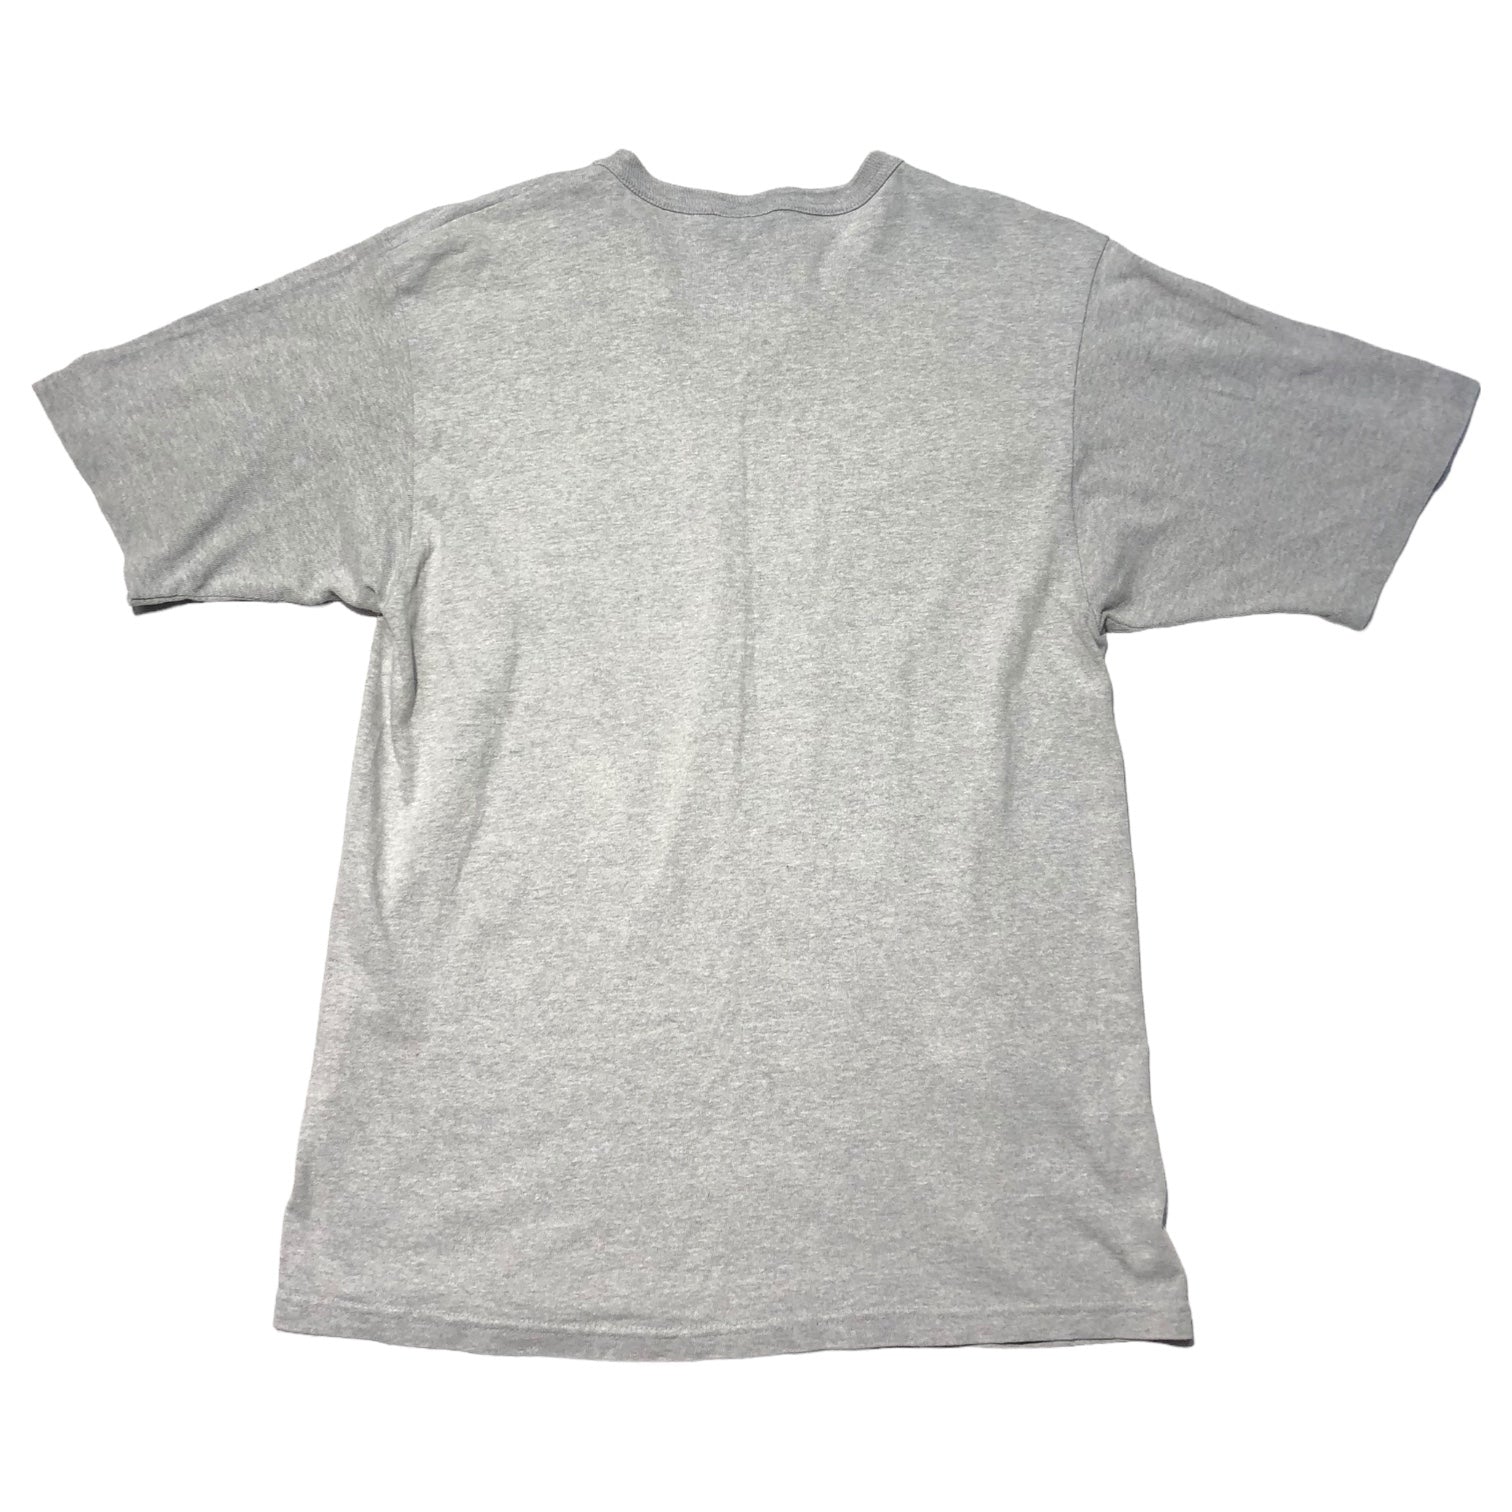 Champion(チャンピオン) 90's ”ARIZONA STATE ATHLETICS”  college print t-shirt 3段プリント カレッジ Tシャツ アリゾナ M グレー 90年代 USA製